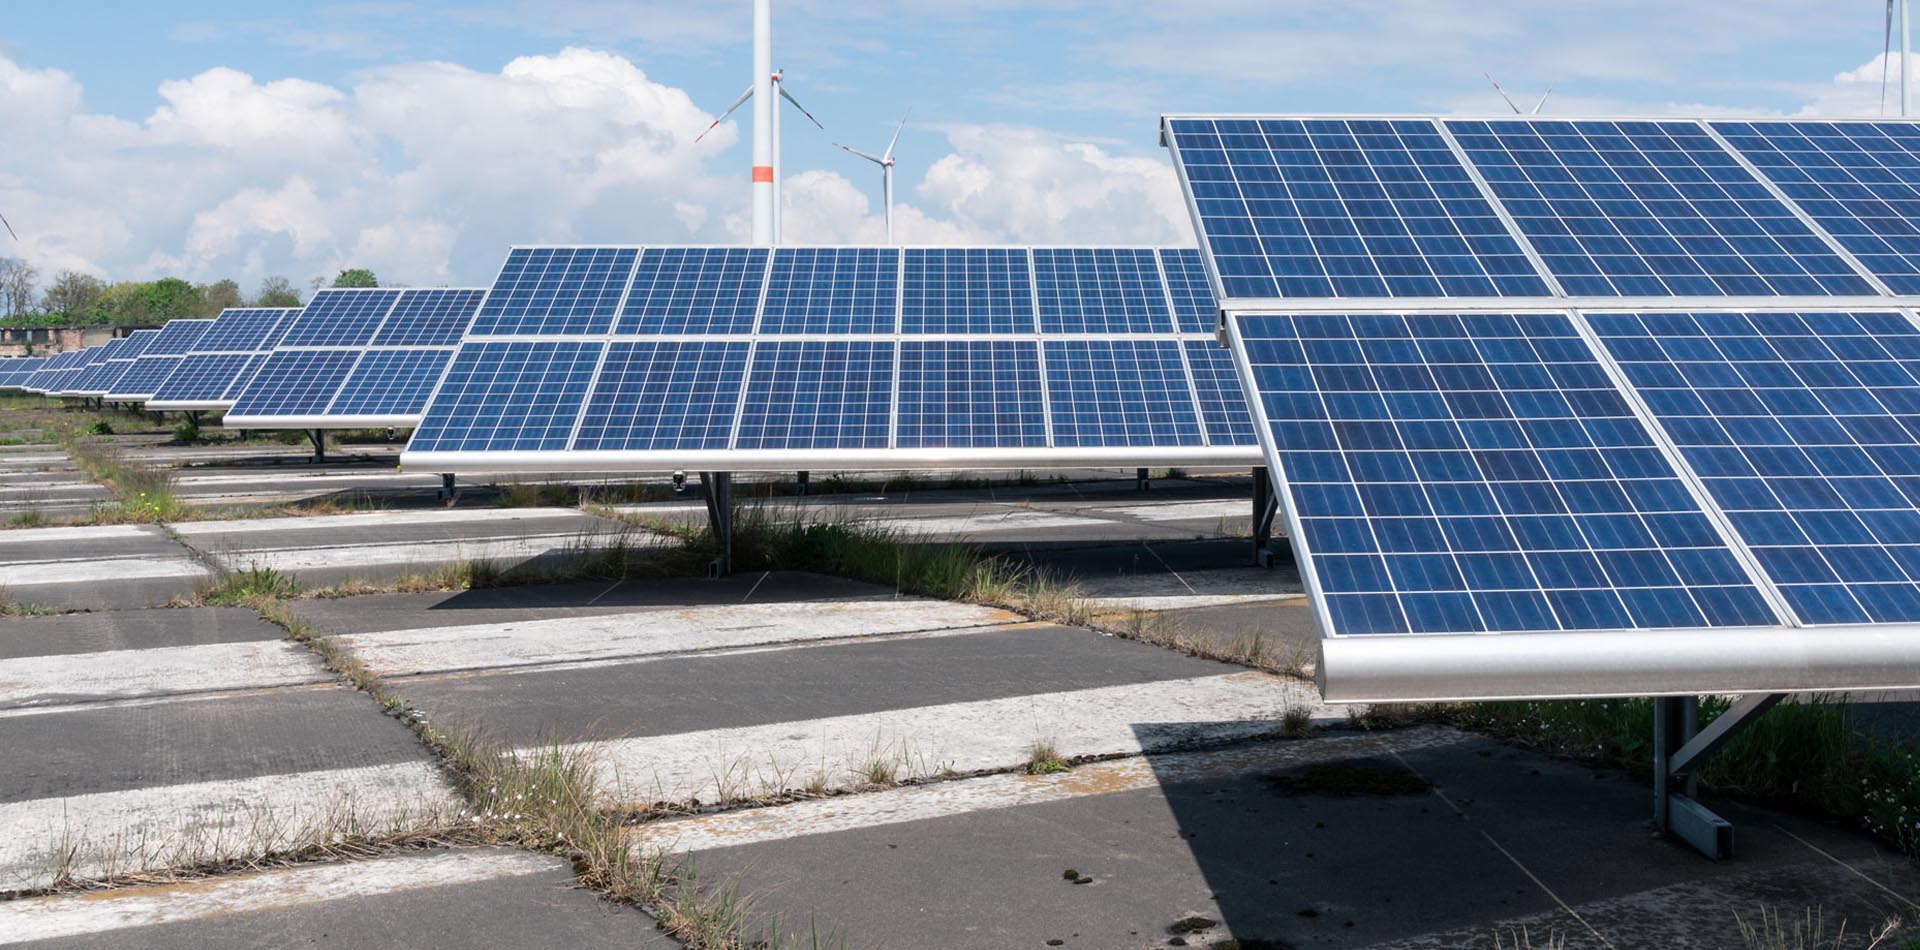 Photovoltaik-Paneele stehen auf Betonplatten, im Hintergund Windräder erkennbar